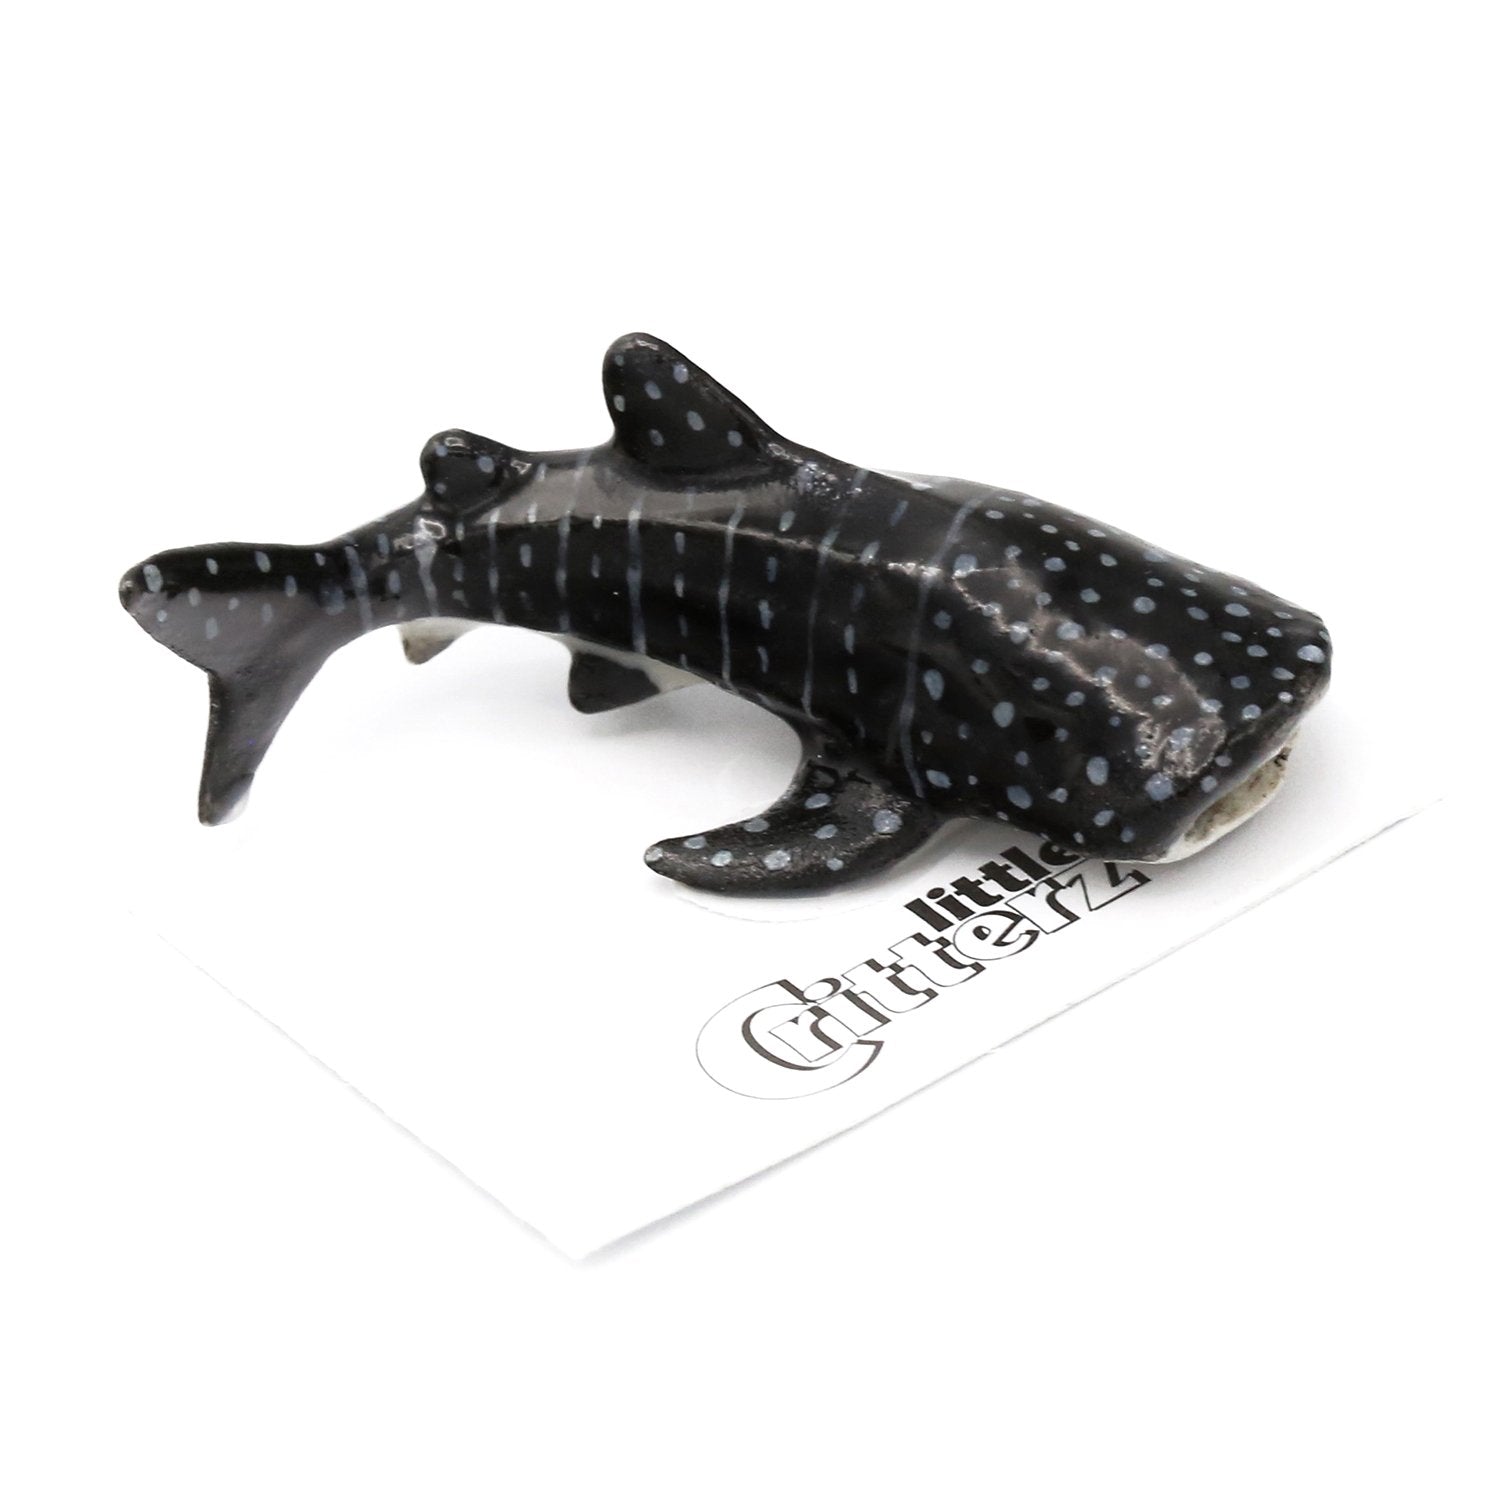 whale shark figurine